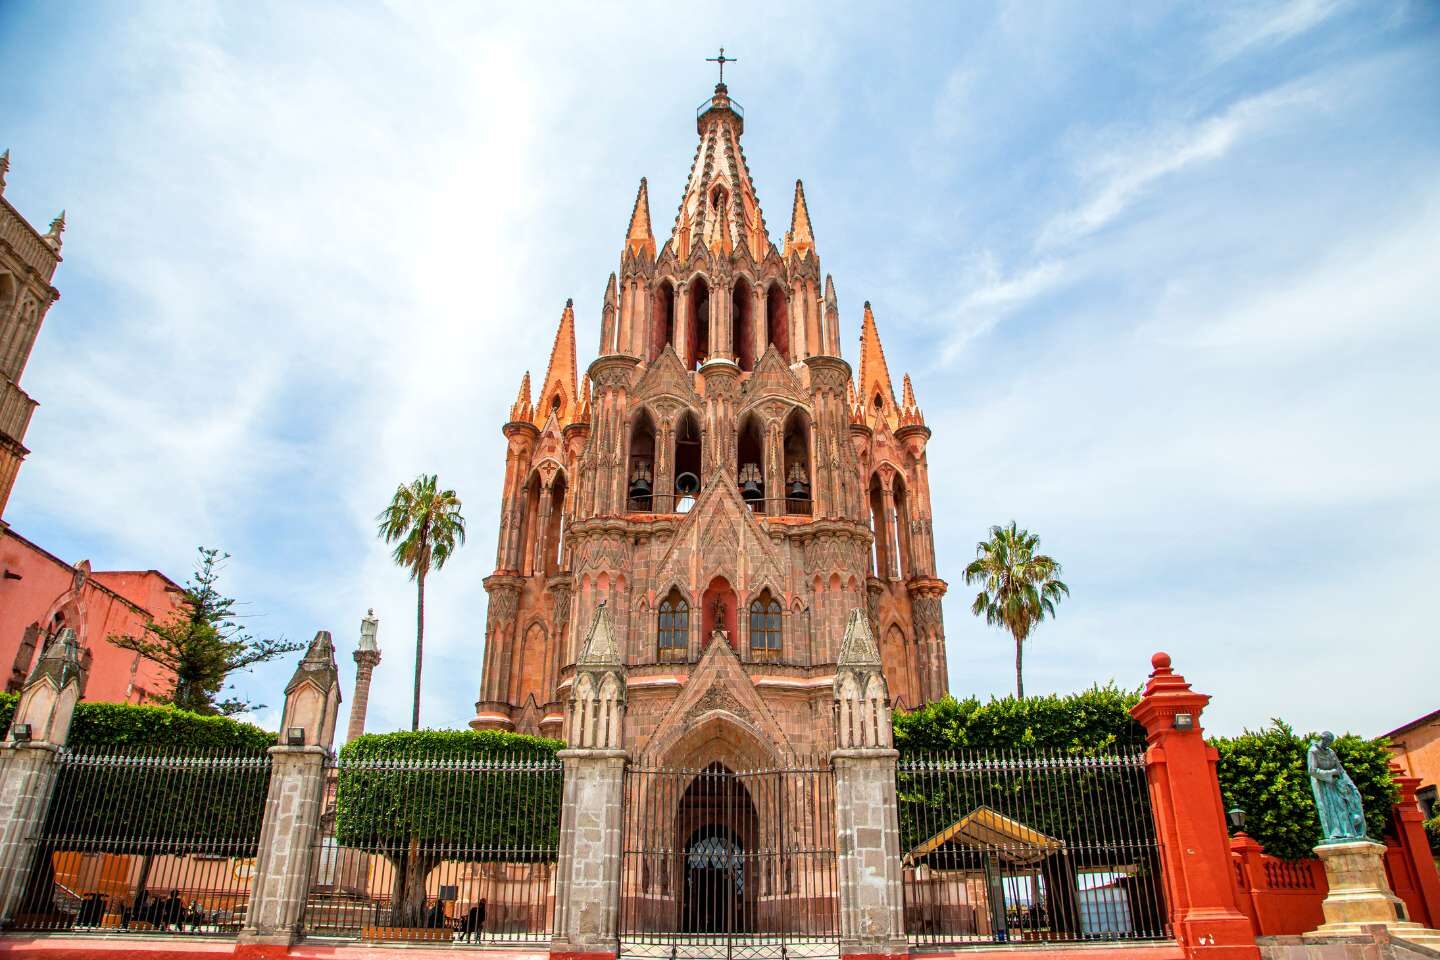 Beautiful Basilica in San Miguel de Allende, Mexico